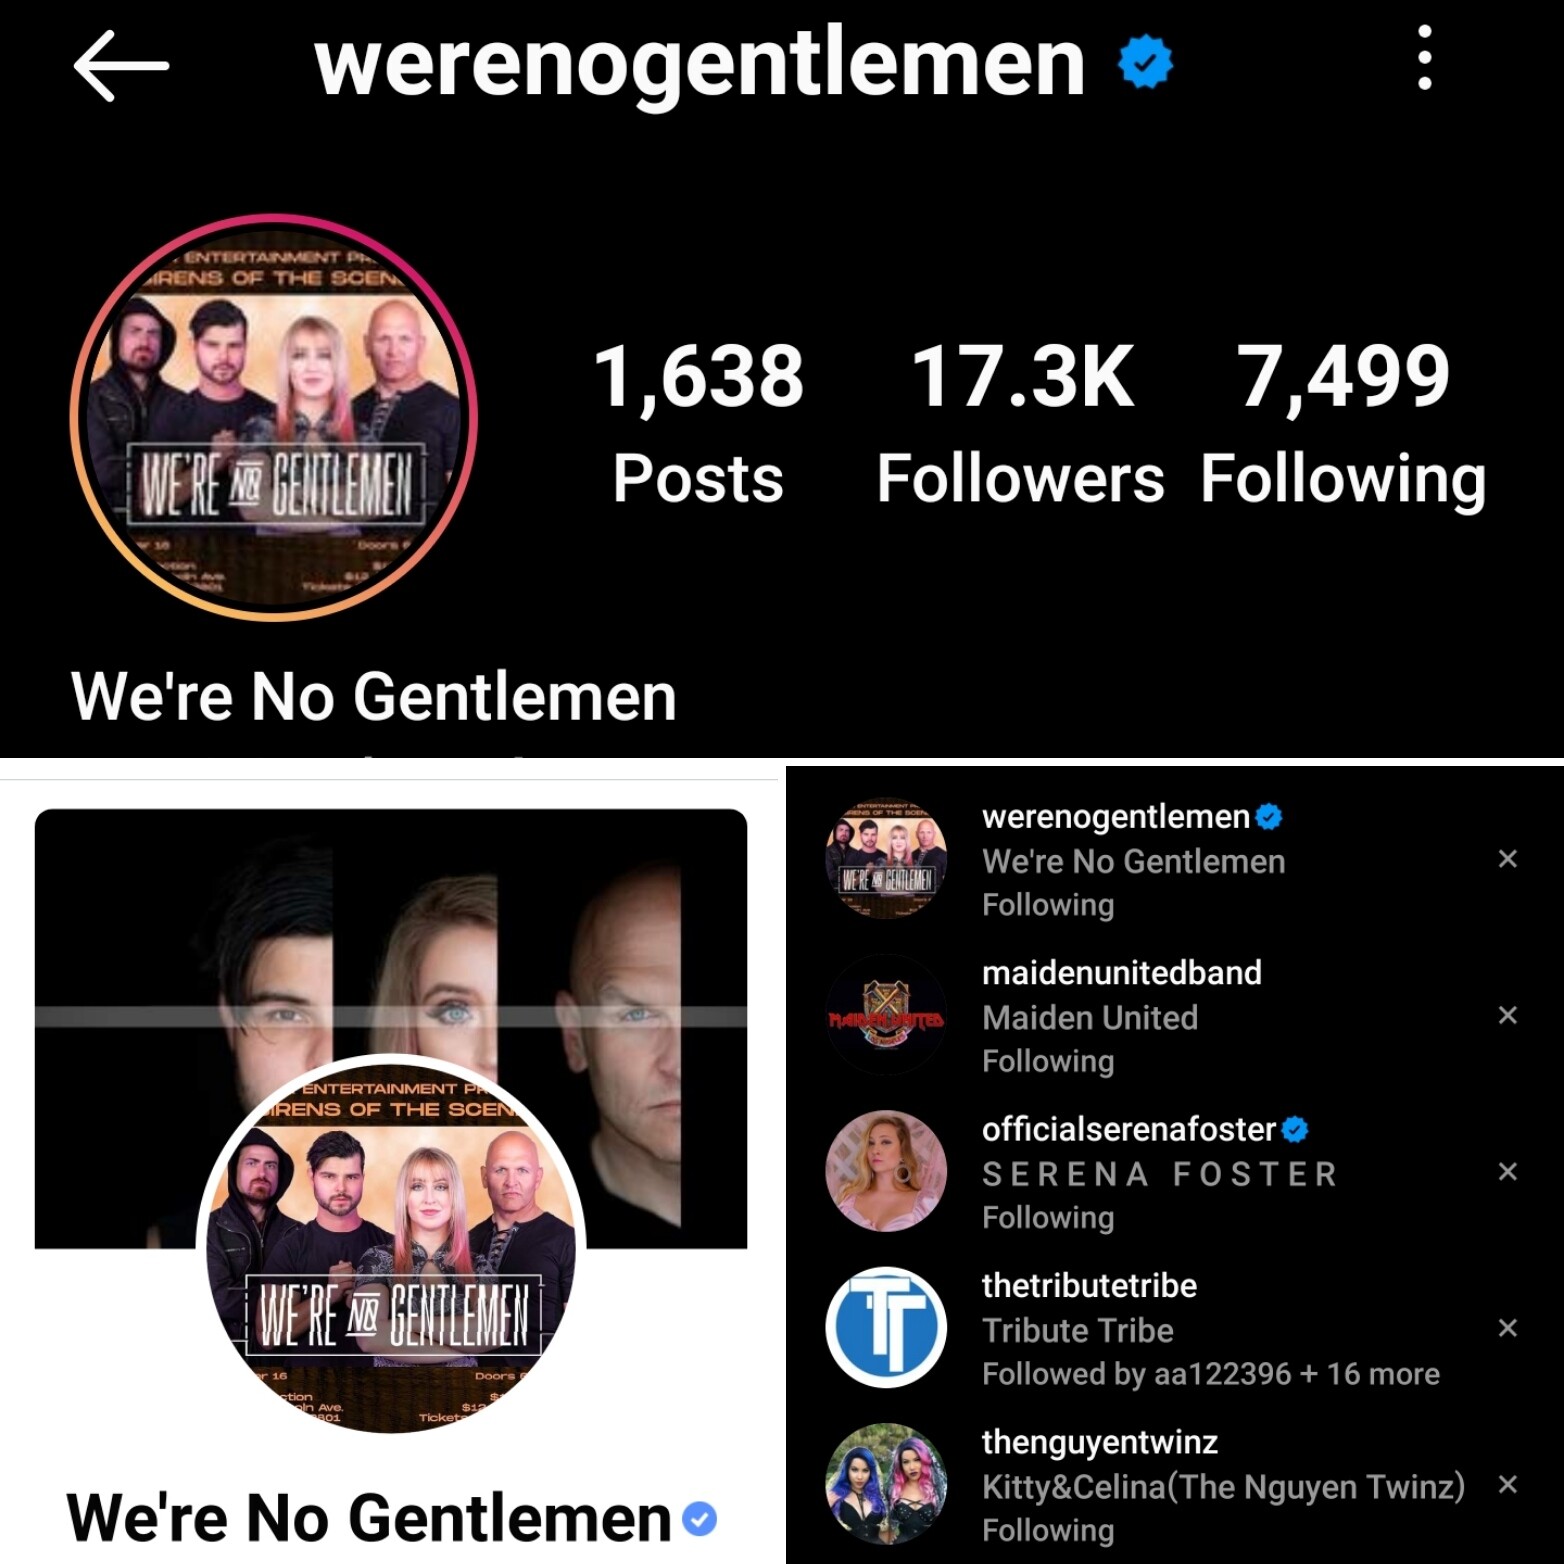 We're No Gentlemen verified on Instagram and Facebook